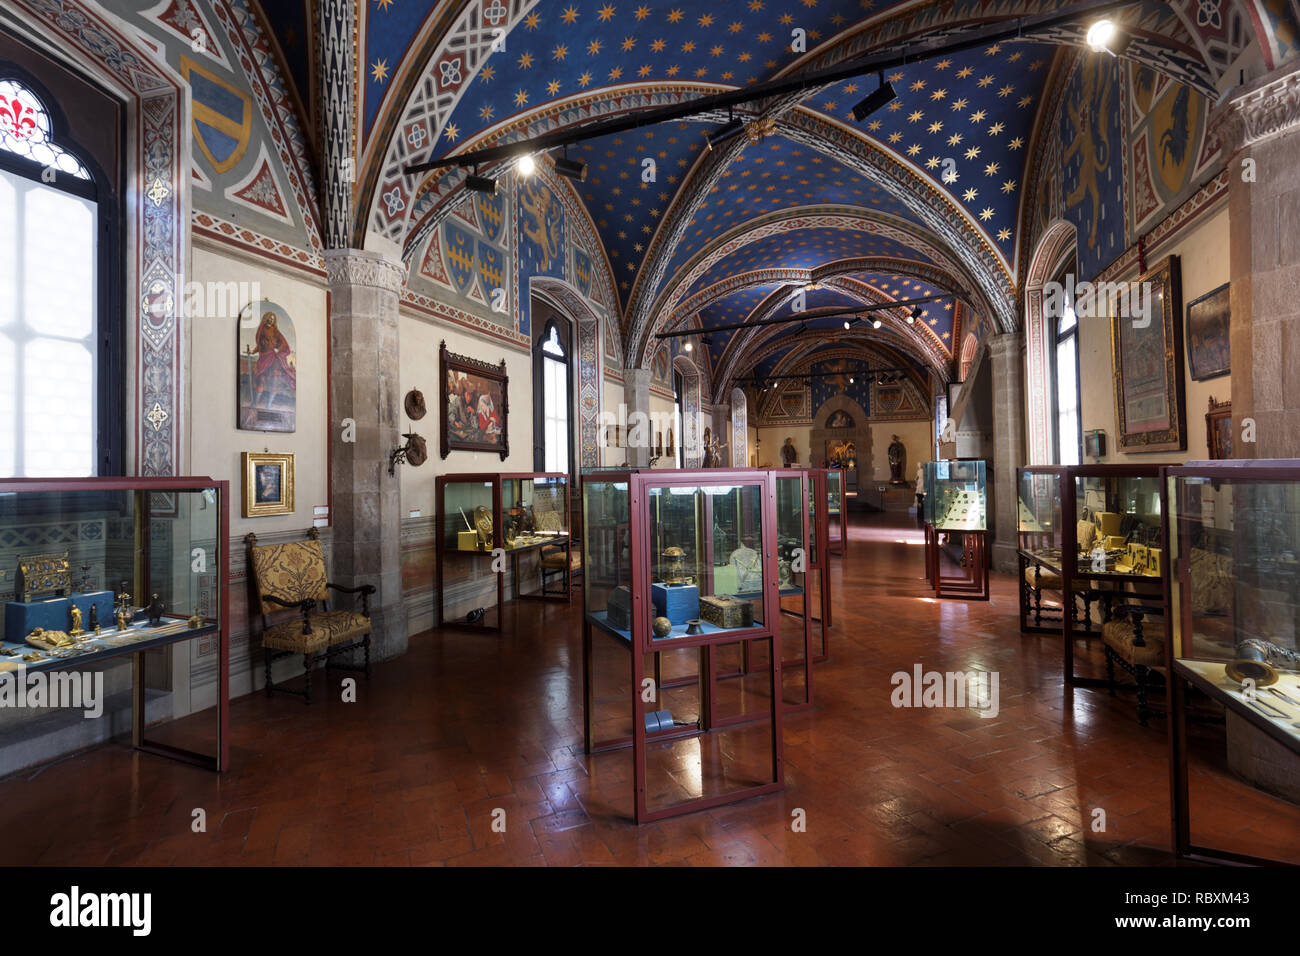 Firenze, Italia - 8 Agosto 2018: interno del Palazzo del Bargello. Costruito nel XIII secolo, il più antico edificio pubblico a Firenze fu aperto come un nat Foto Stock